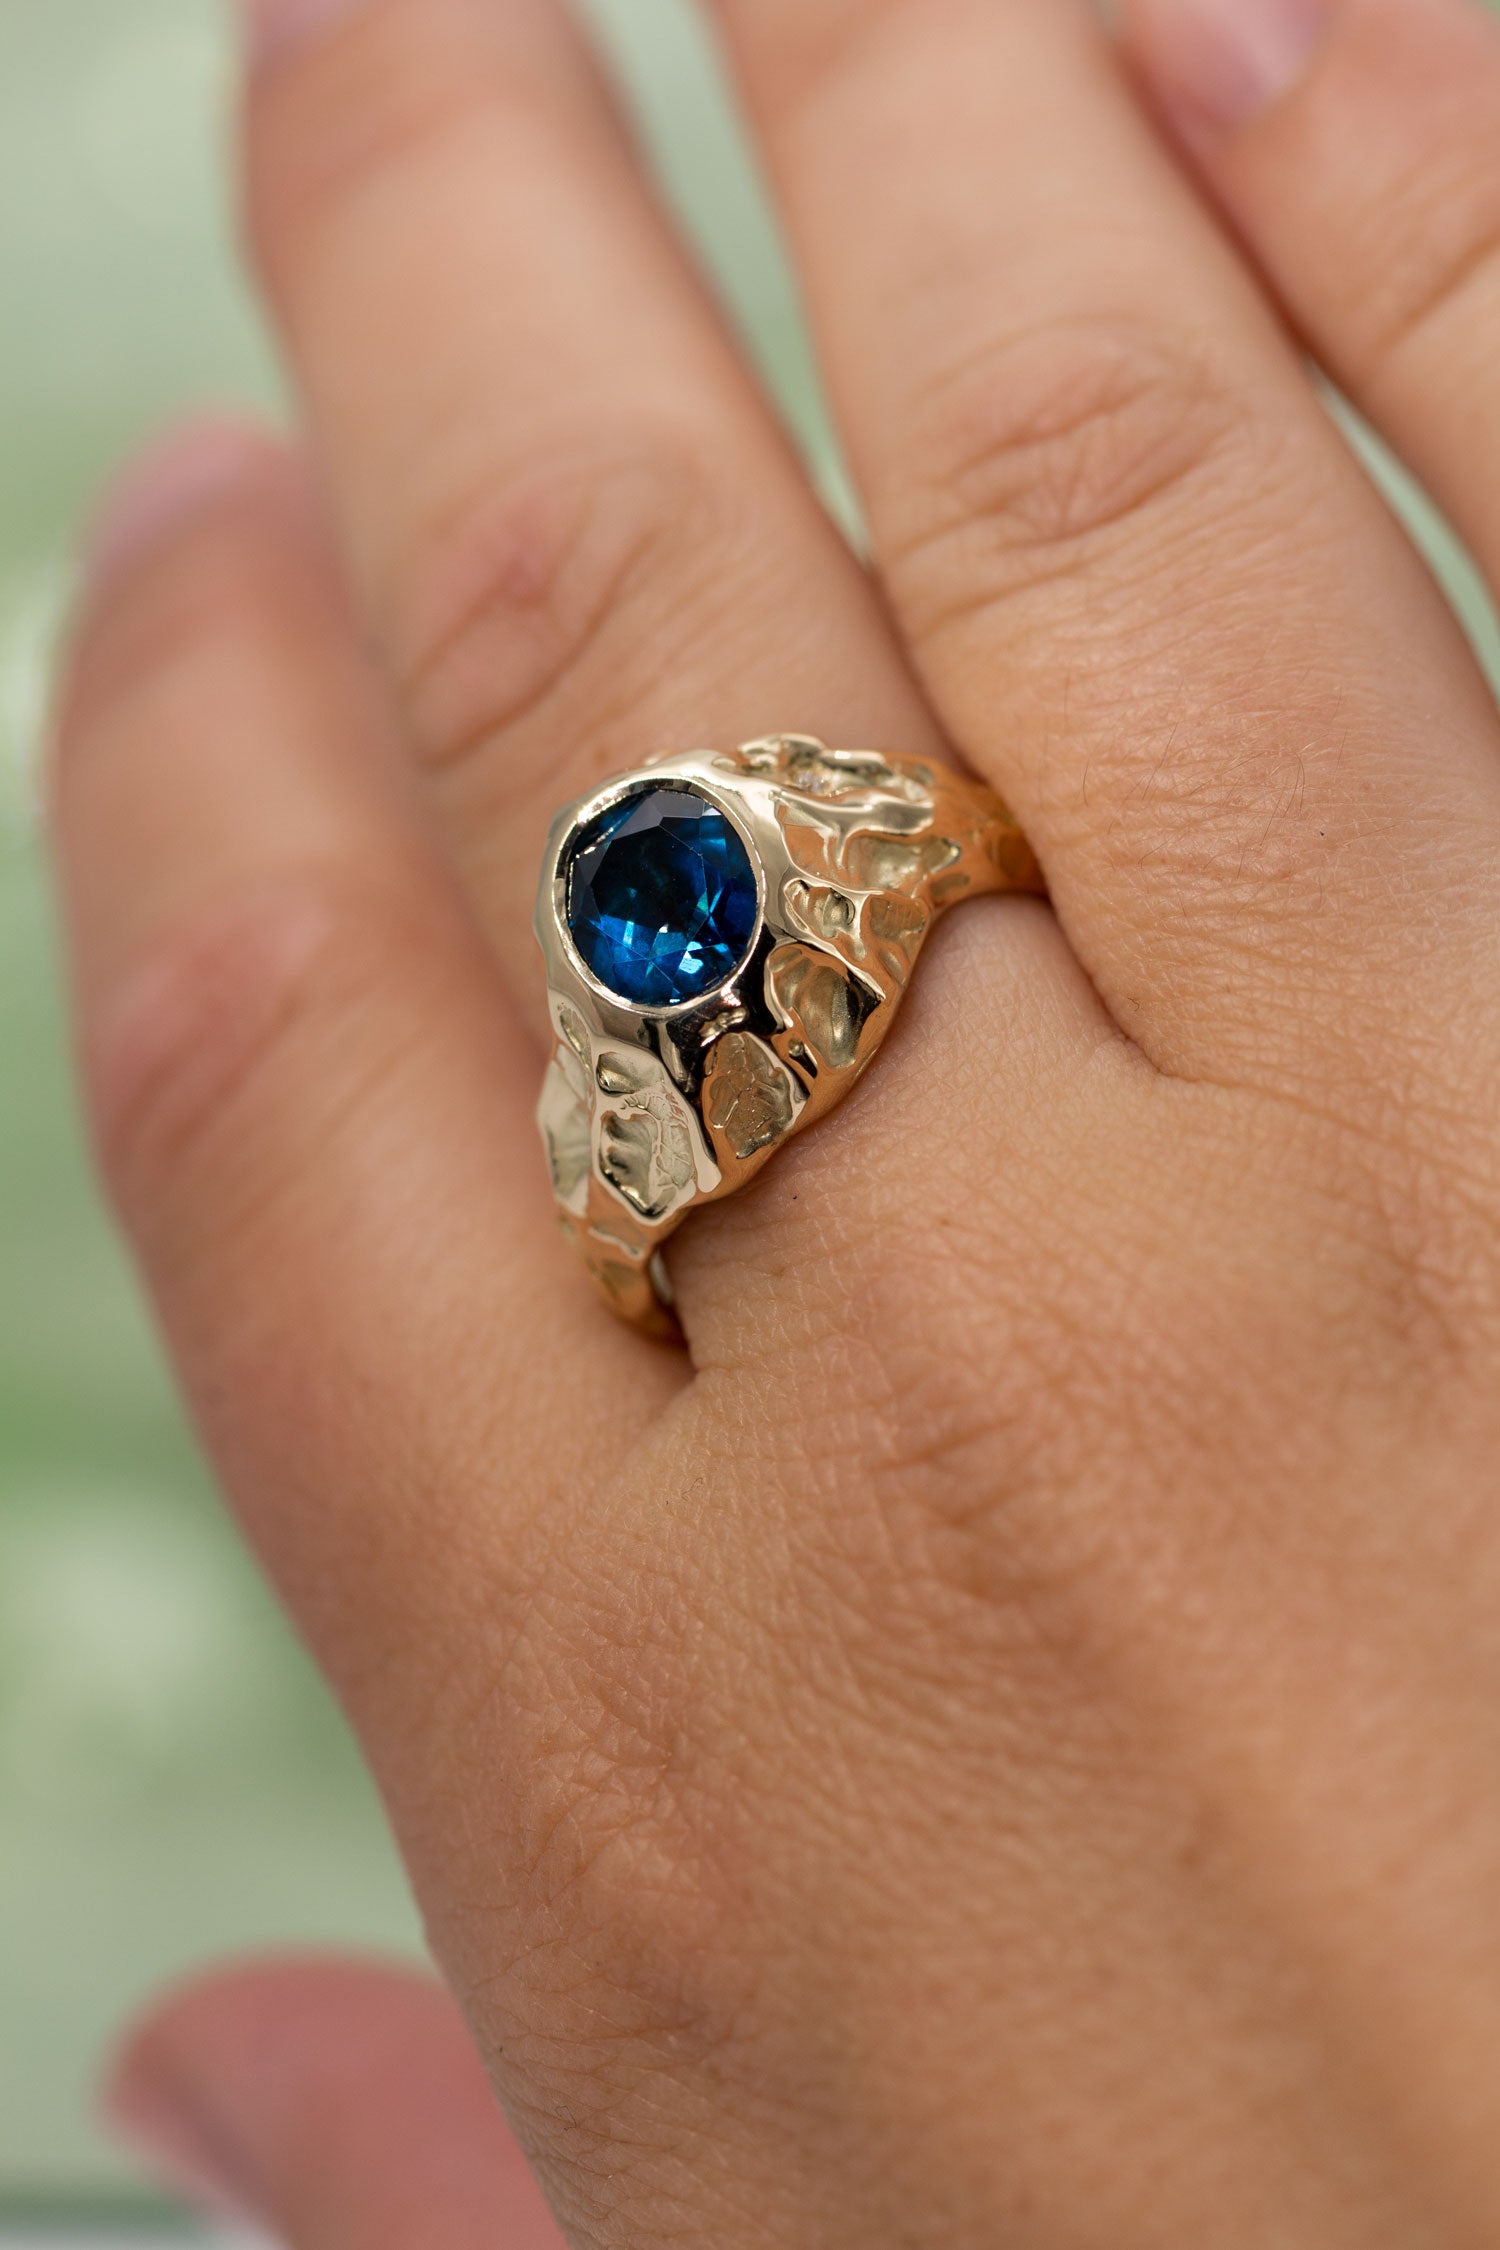 Udsnit af hånd med ring. En stor guldring sidder på pegefingeren. Ringen er med en blå topas og enkelte diamanter langs siden. Den er formgivet i et organisk udtryk. Design af Michell Liljefelt